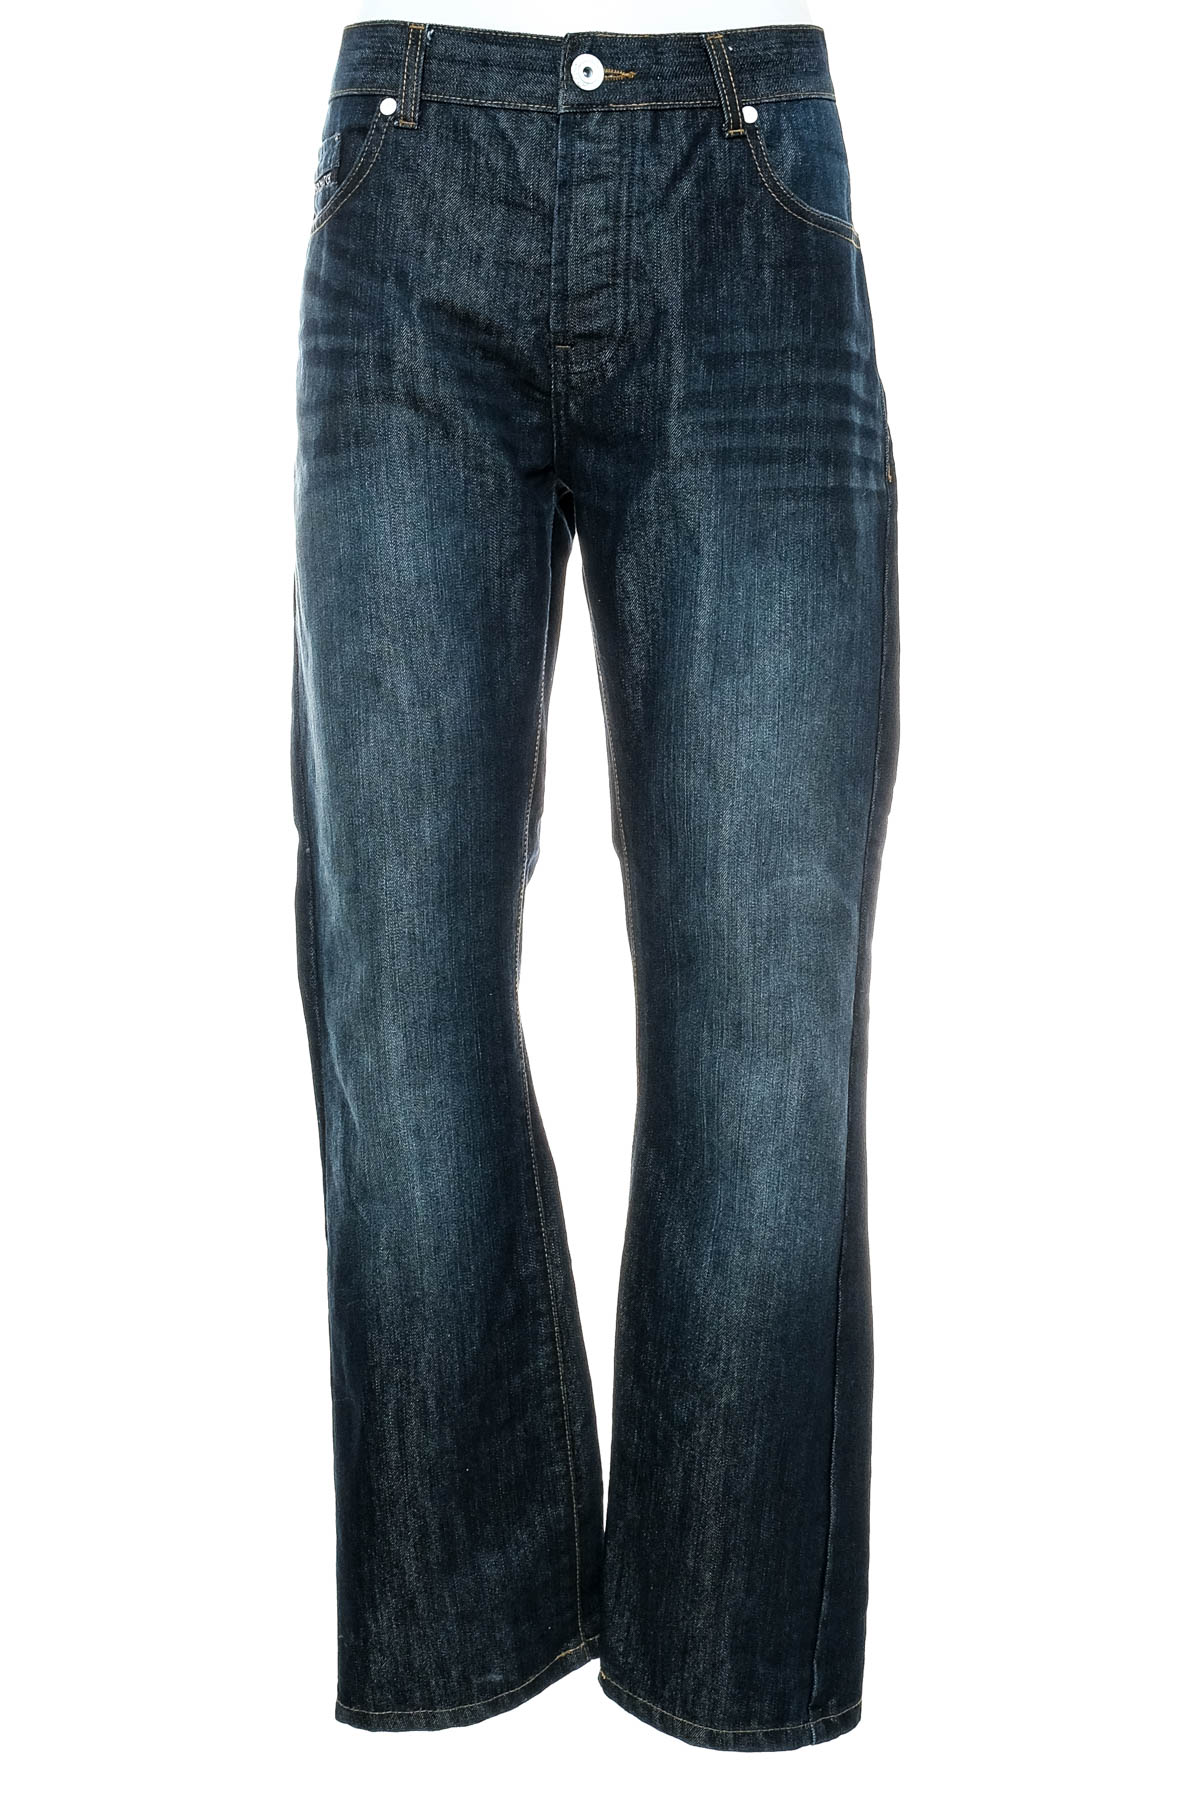 Jeans pentru bărbăți - Cross Hatch - 0